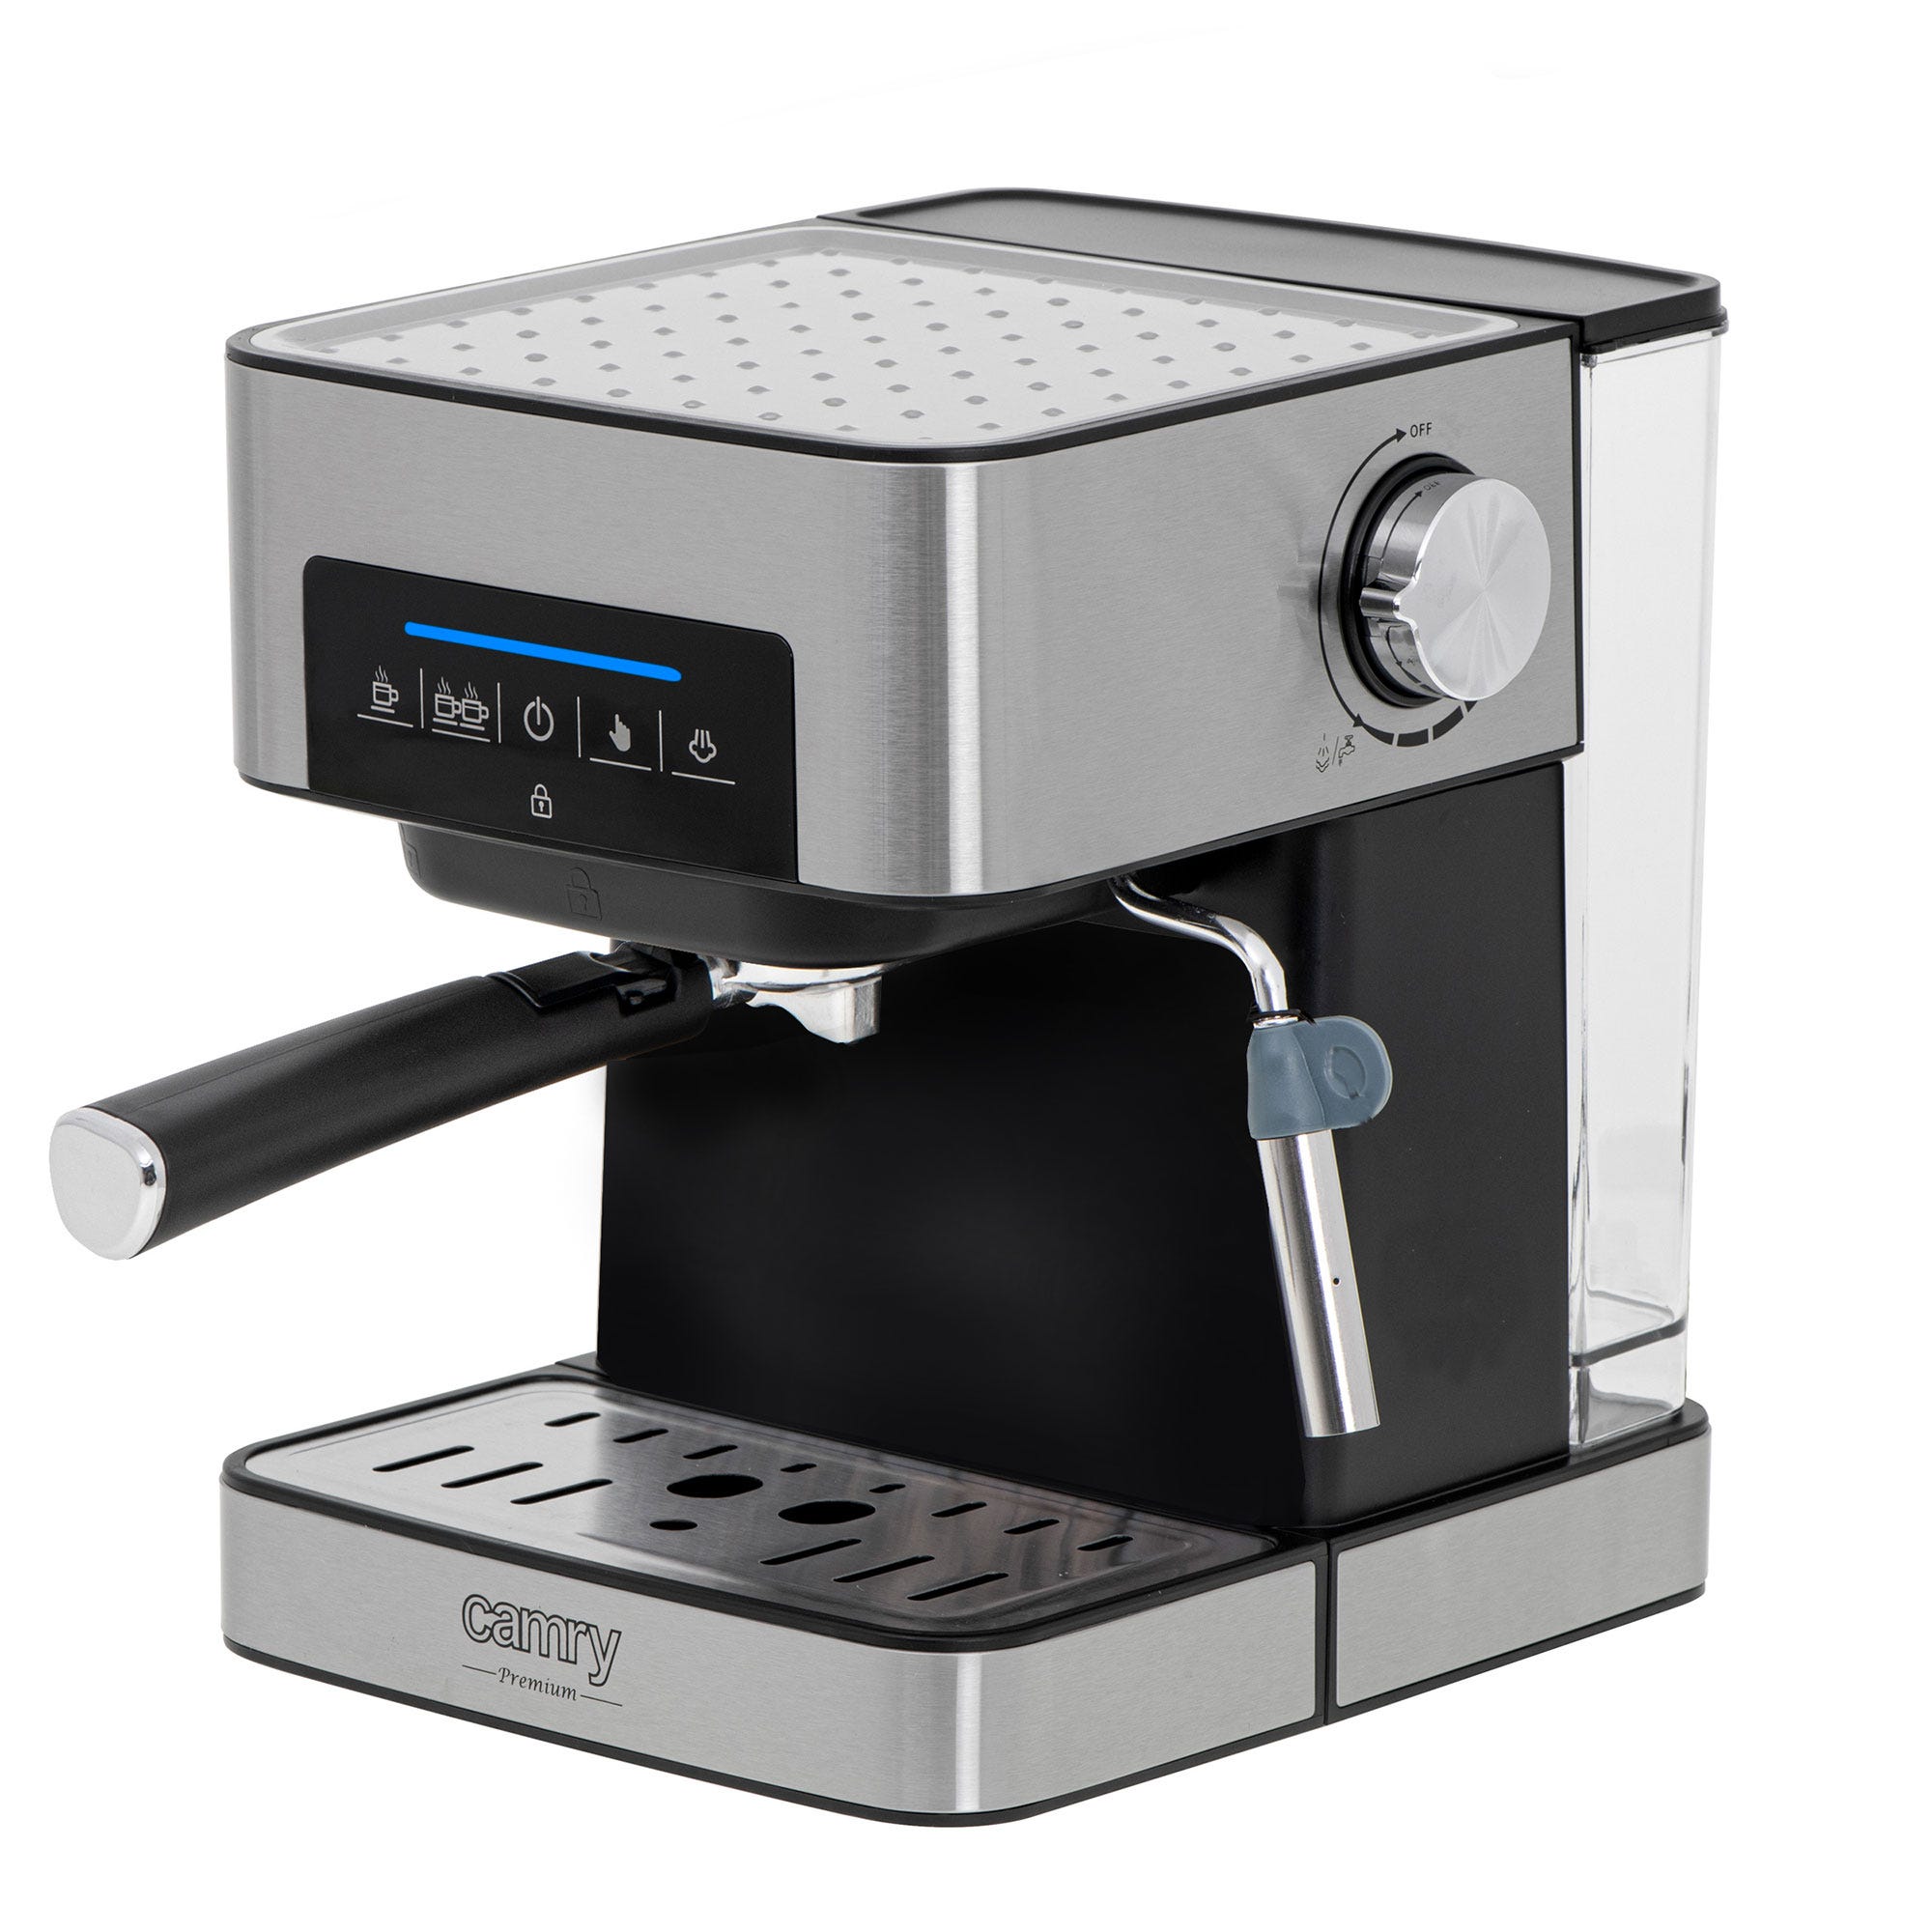 🤩 Cafetera Cecotec Espresso con doble salida de café y espumador